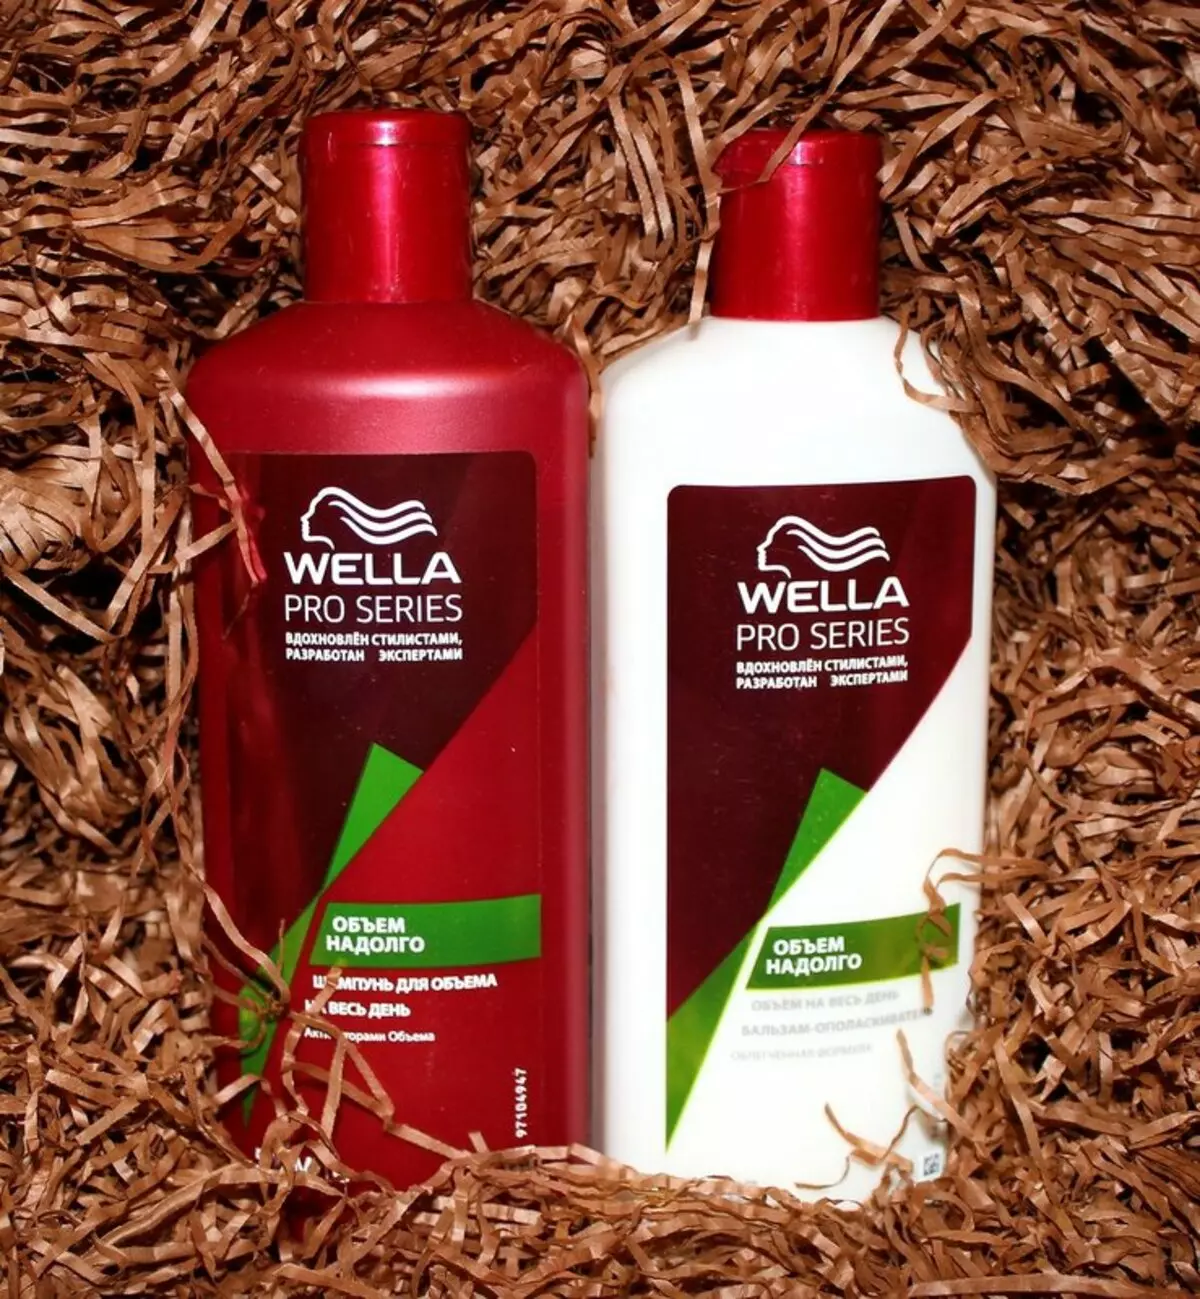 Wella Professional: Profesionalna kozmetička recenzija za kosu, prednosti i nedostaci 4770_7